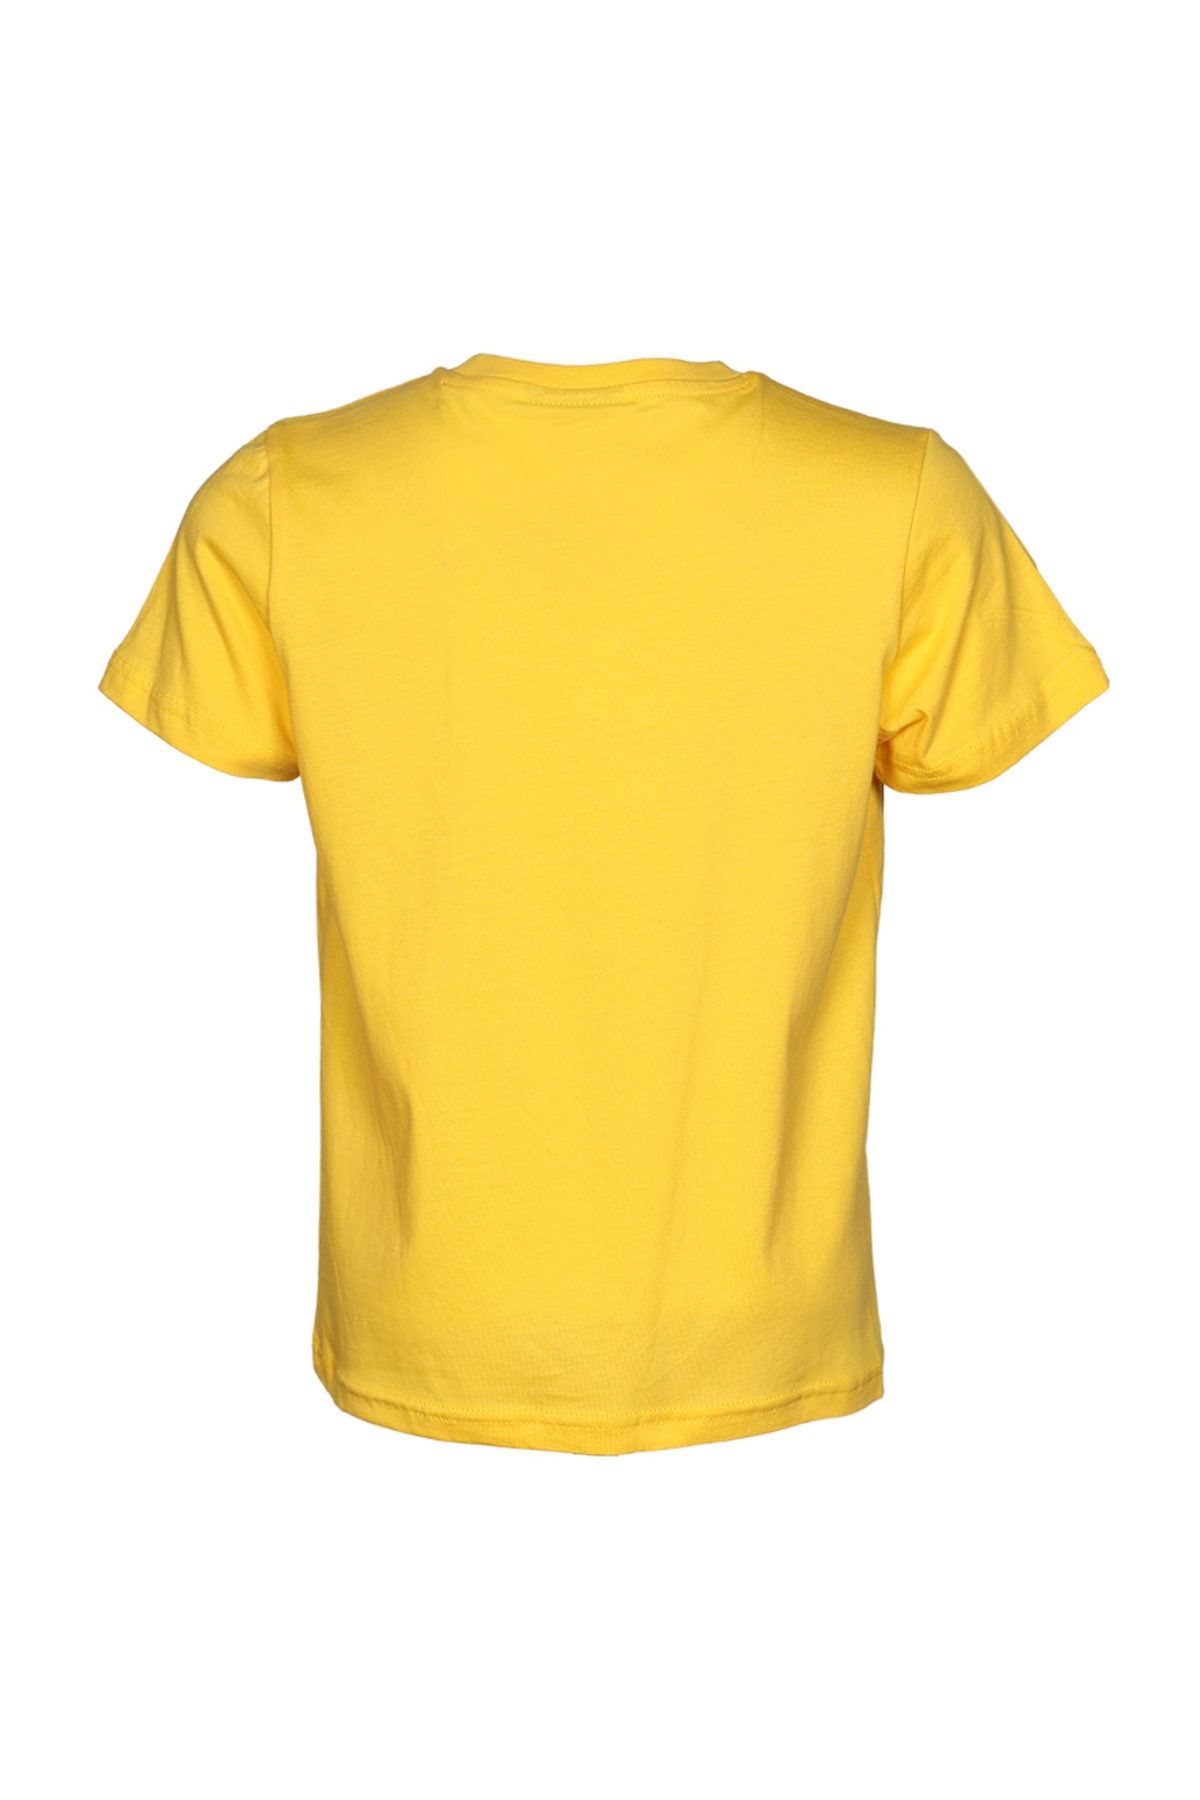 hummel آستین کوتاه پسر زرد Birger t -shirt